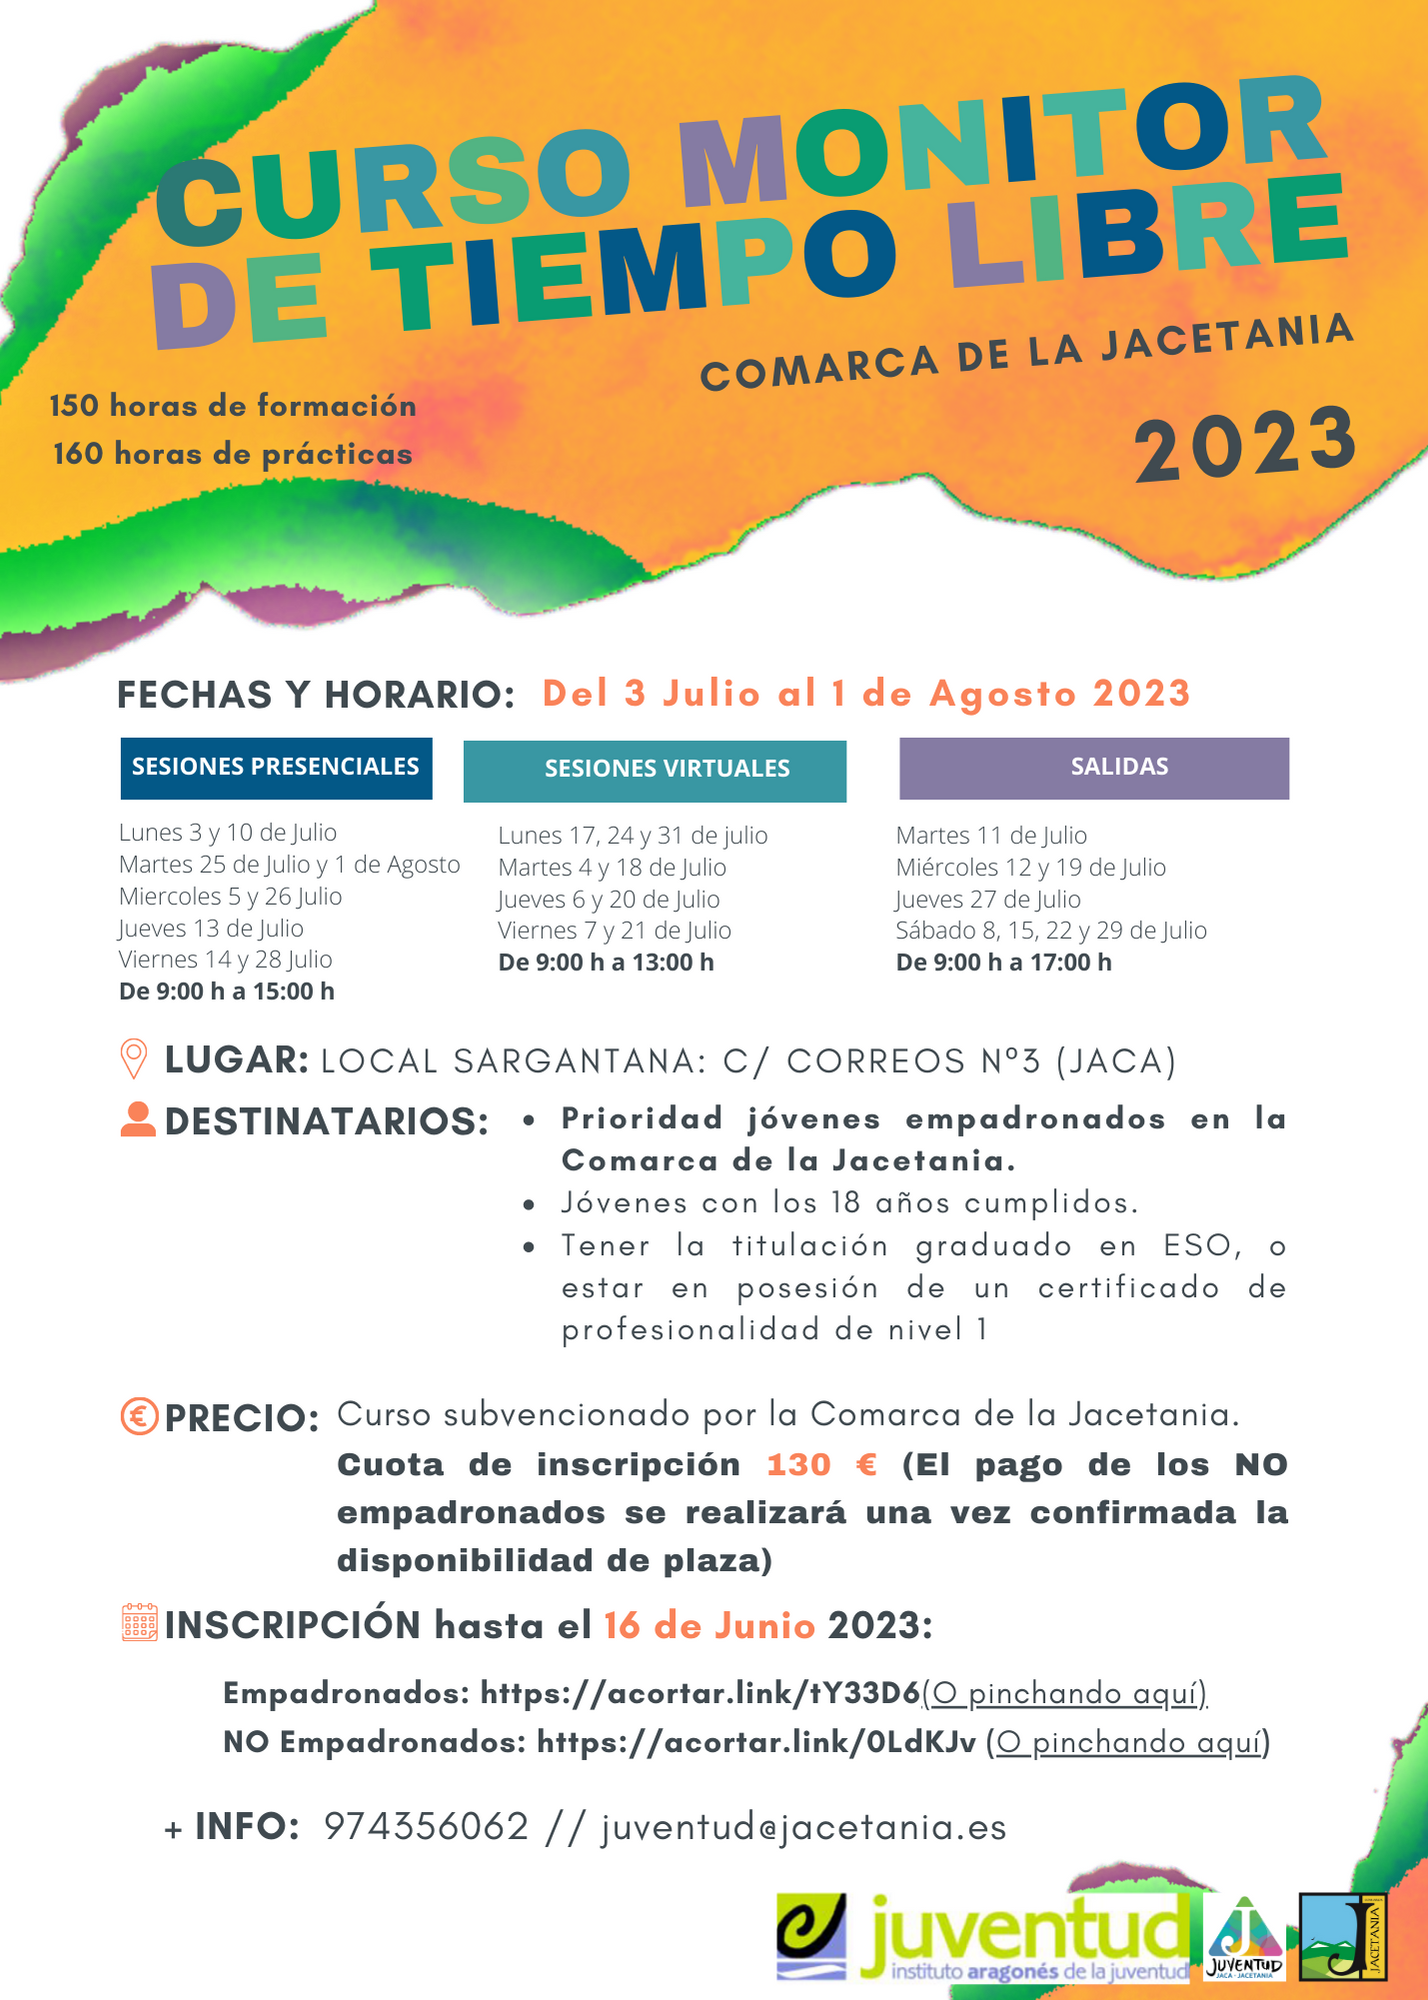 La Comarca de La Jacetania organiza los Cursos de Monitor y Premonitor de tiempo libre para este verano